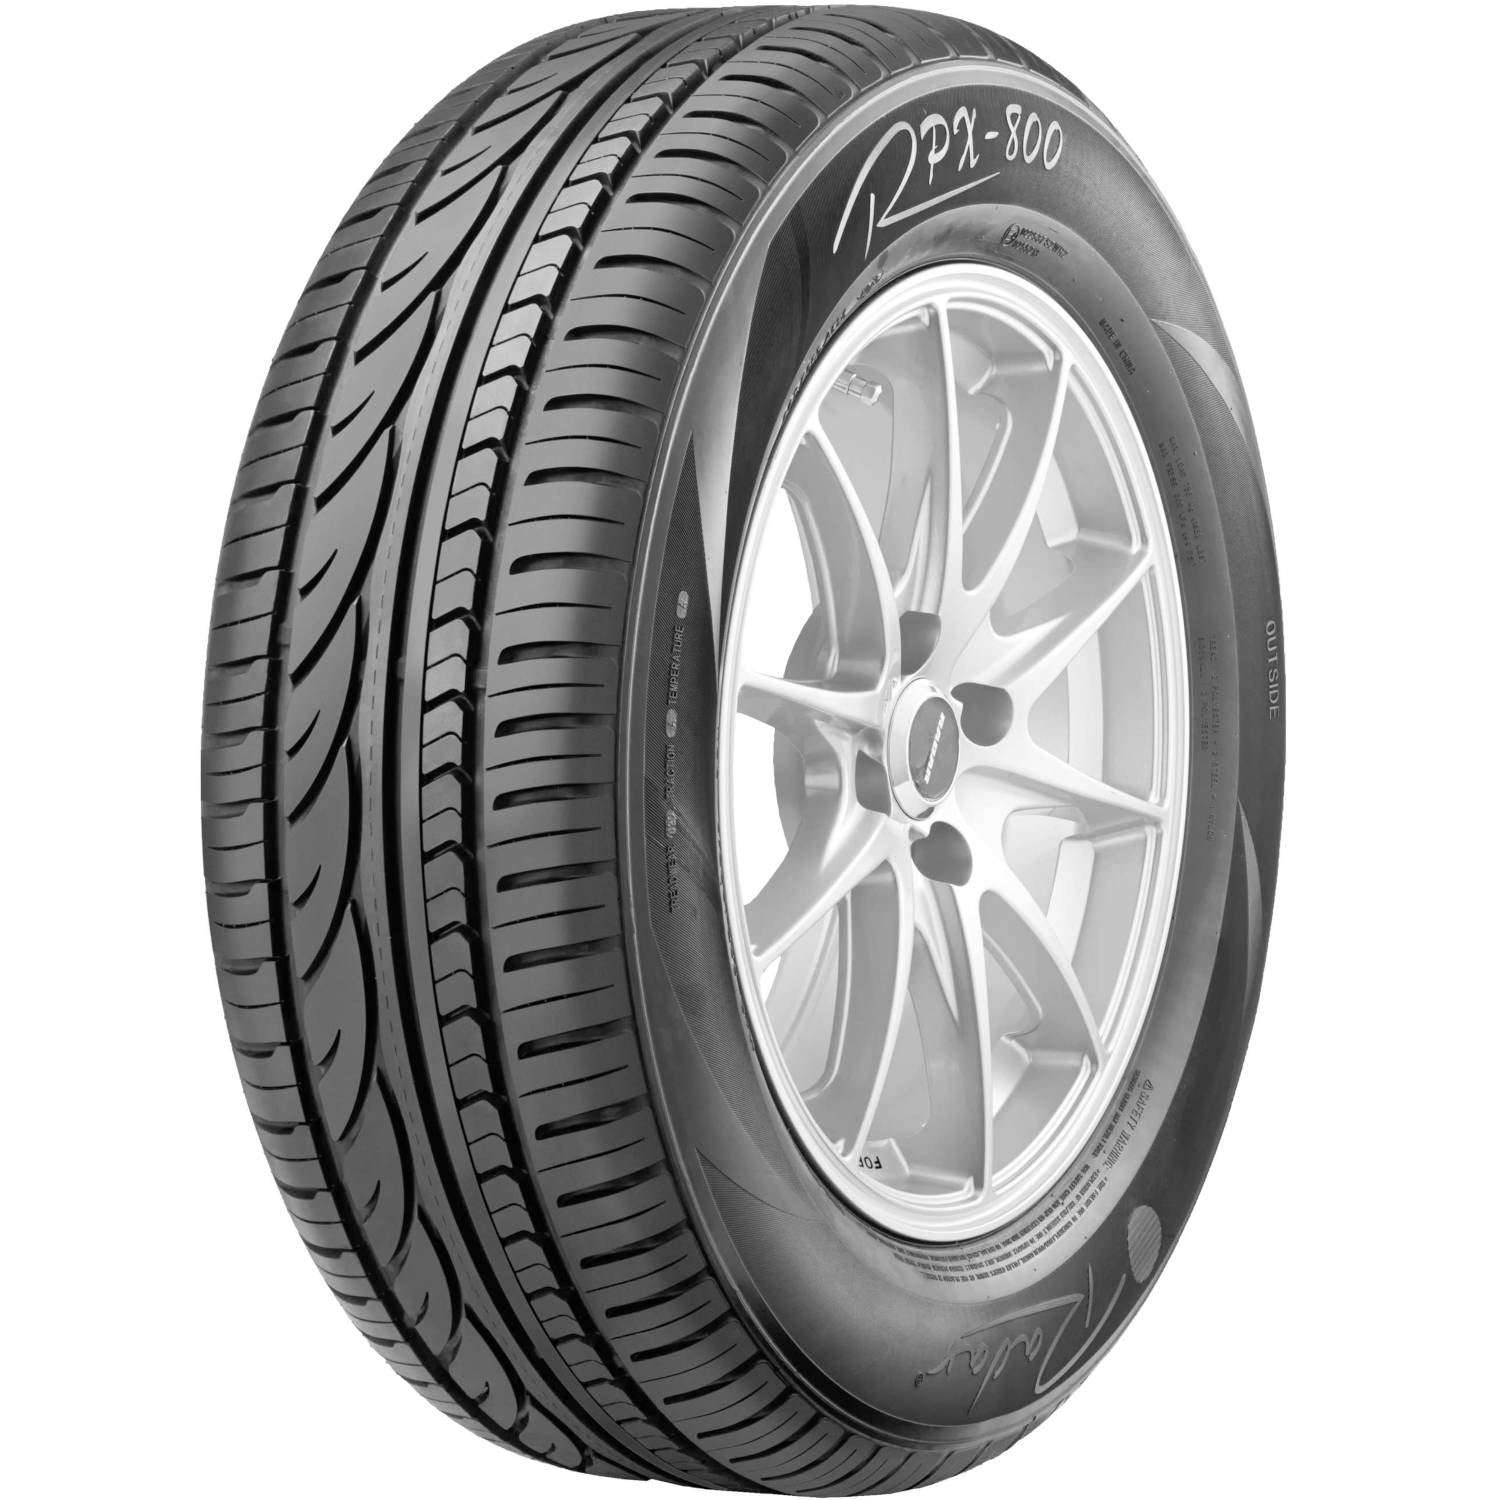 RADAR RPX-800 195/50R16 (23.7X7.7R 16) Tires